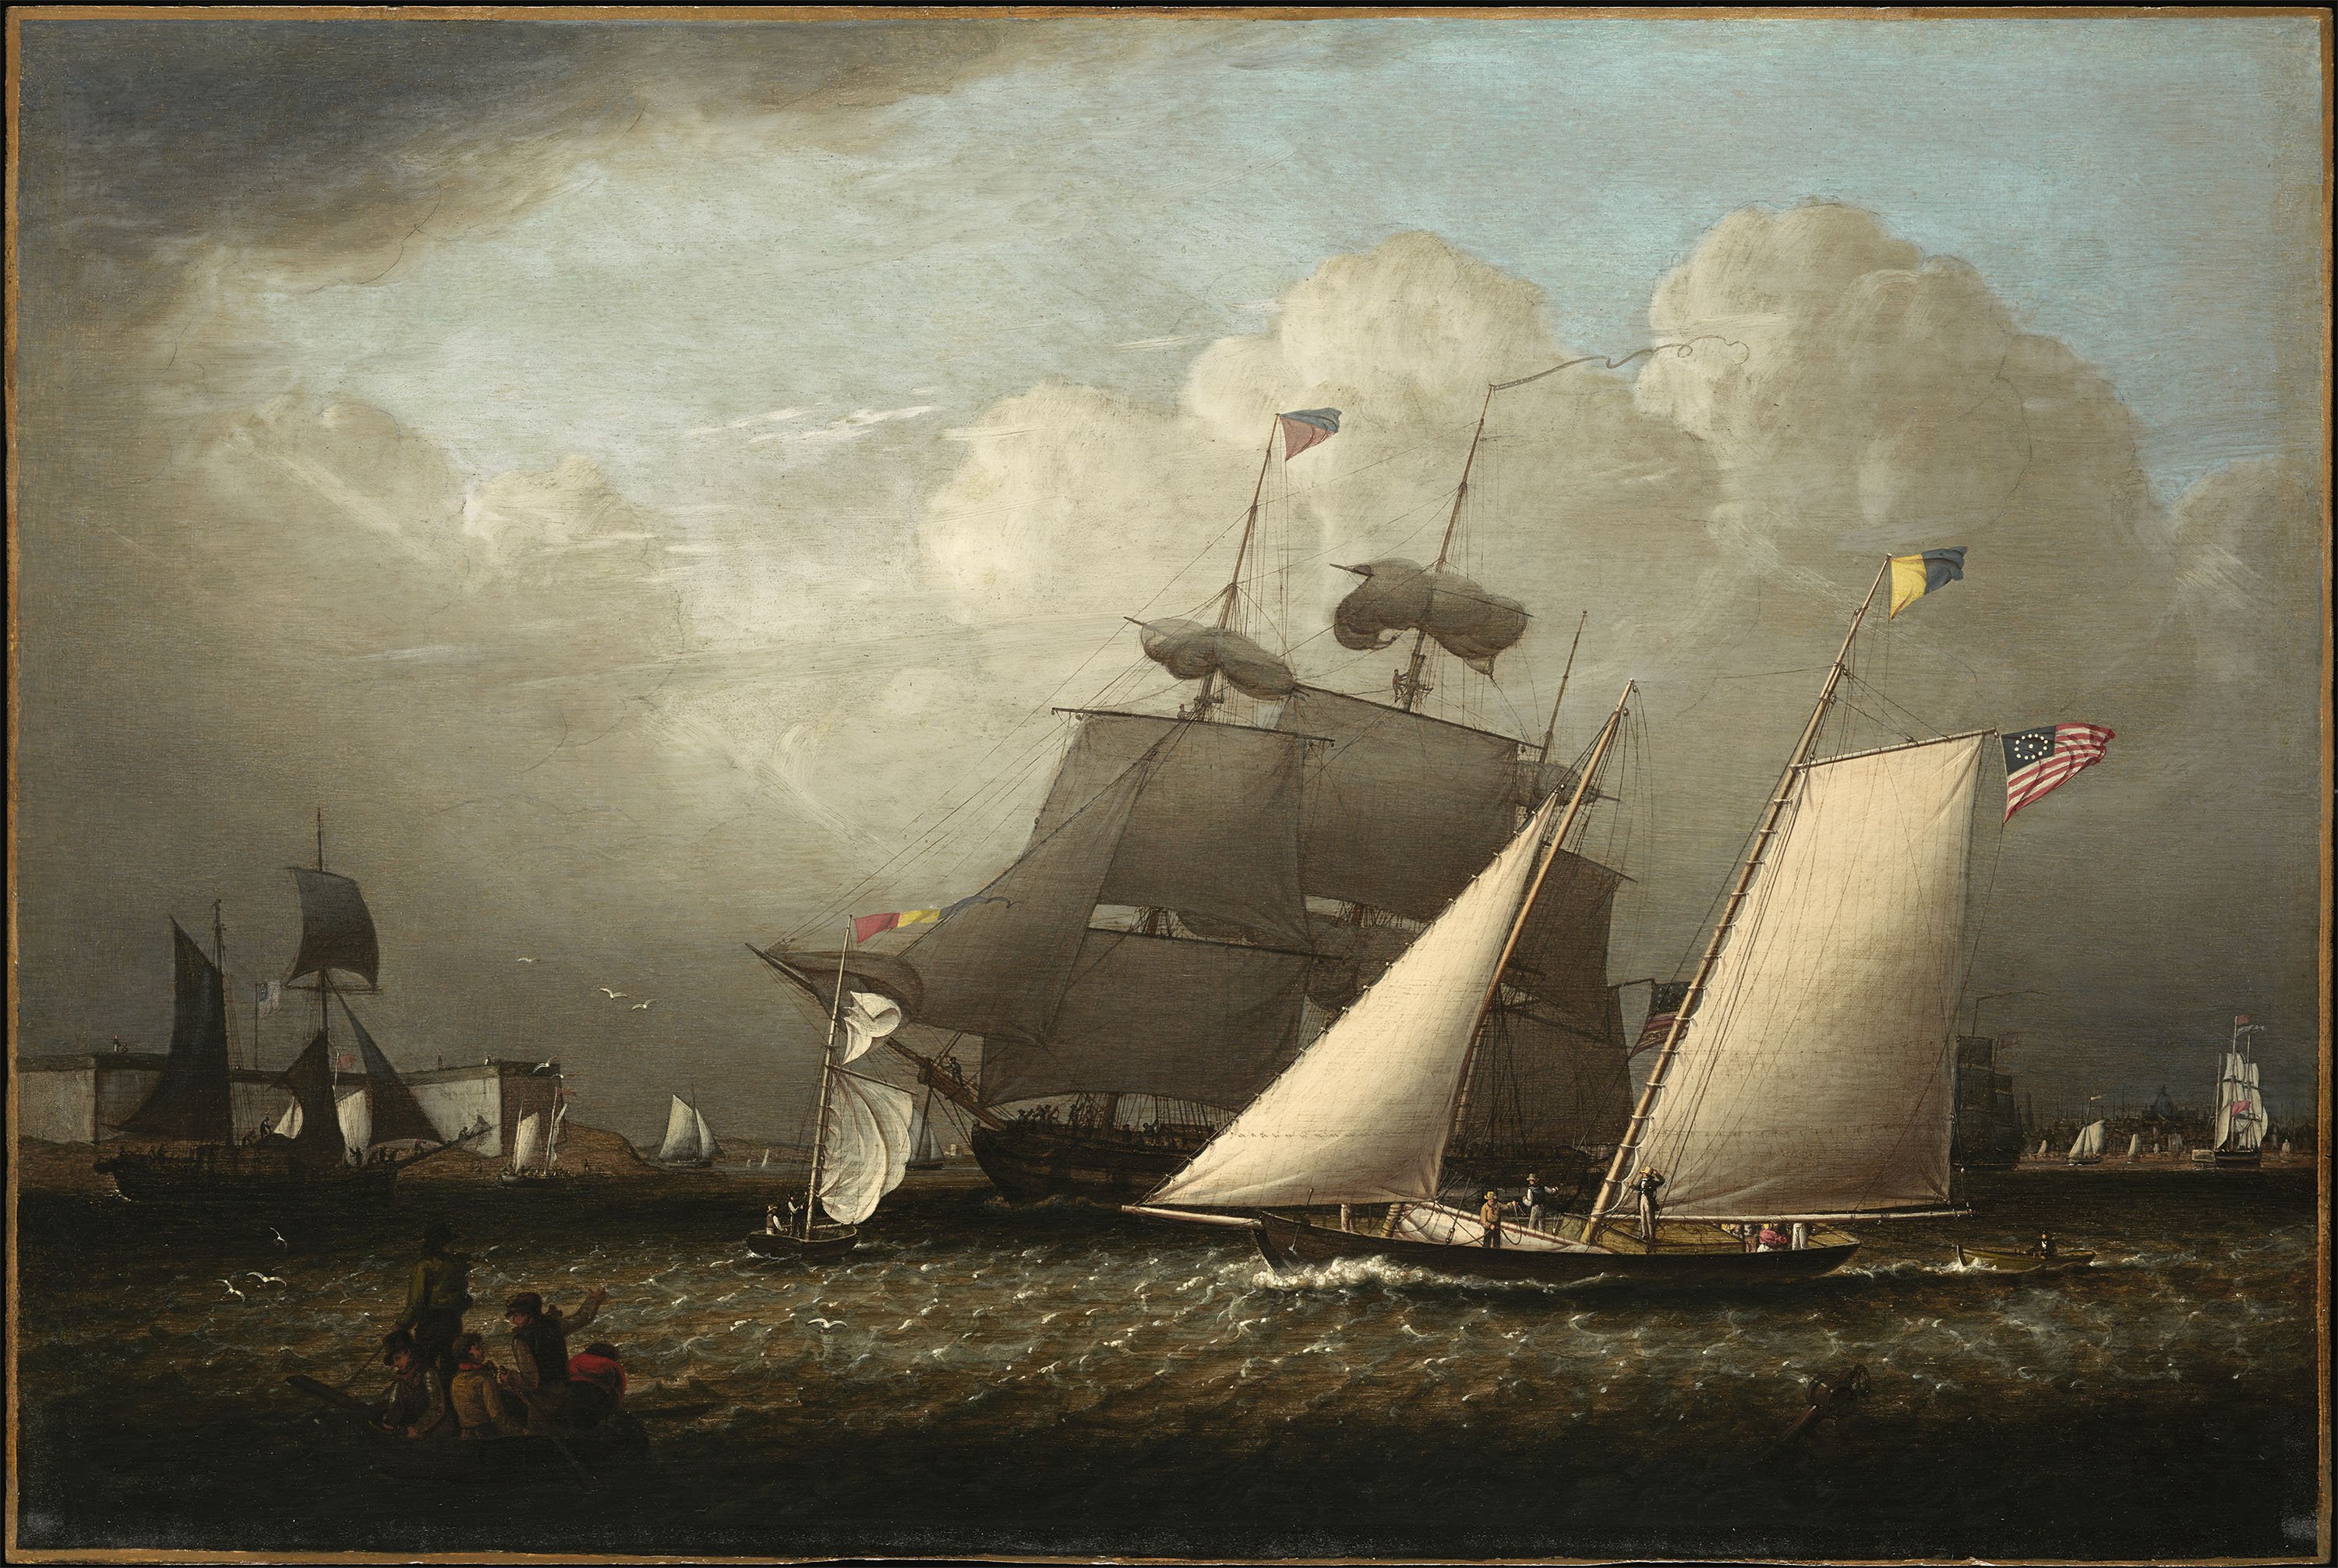 Picture of the 'Dream' Pleasure Yacht. Imagen del yate "Dream", 1839